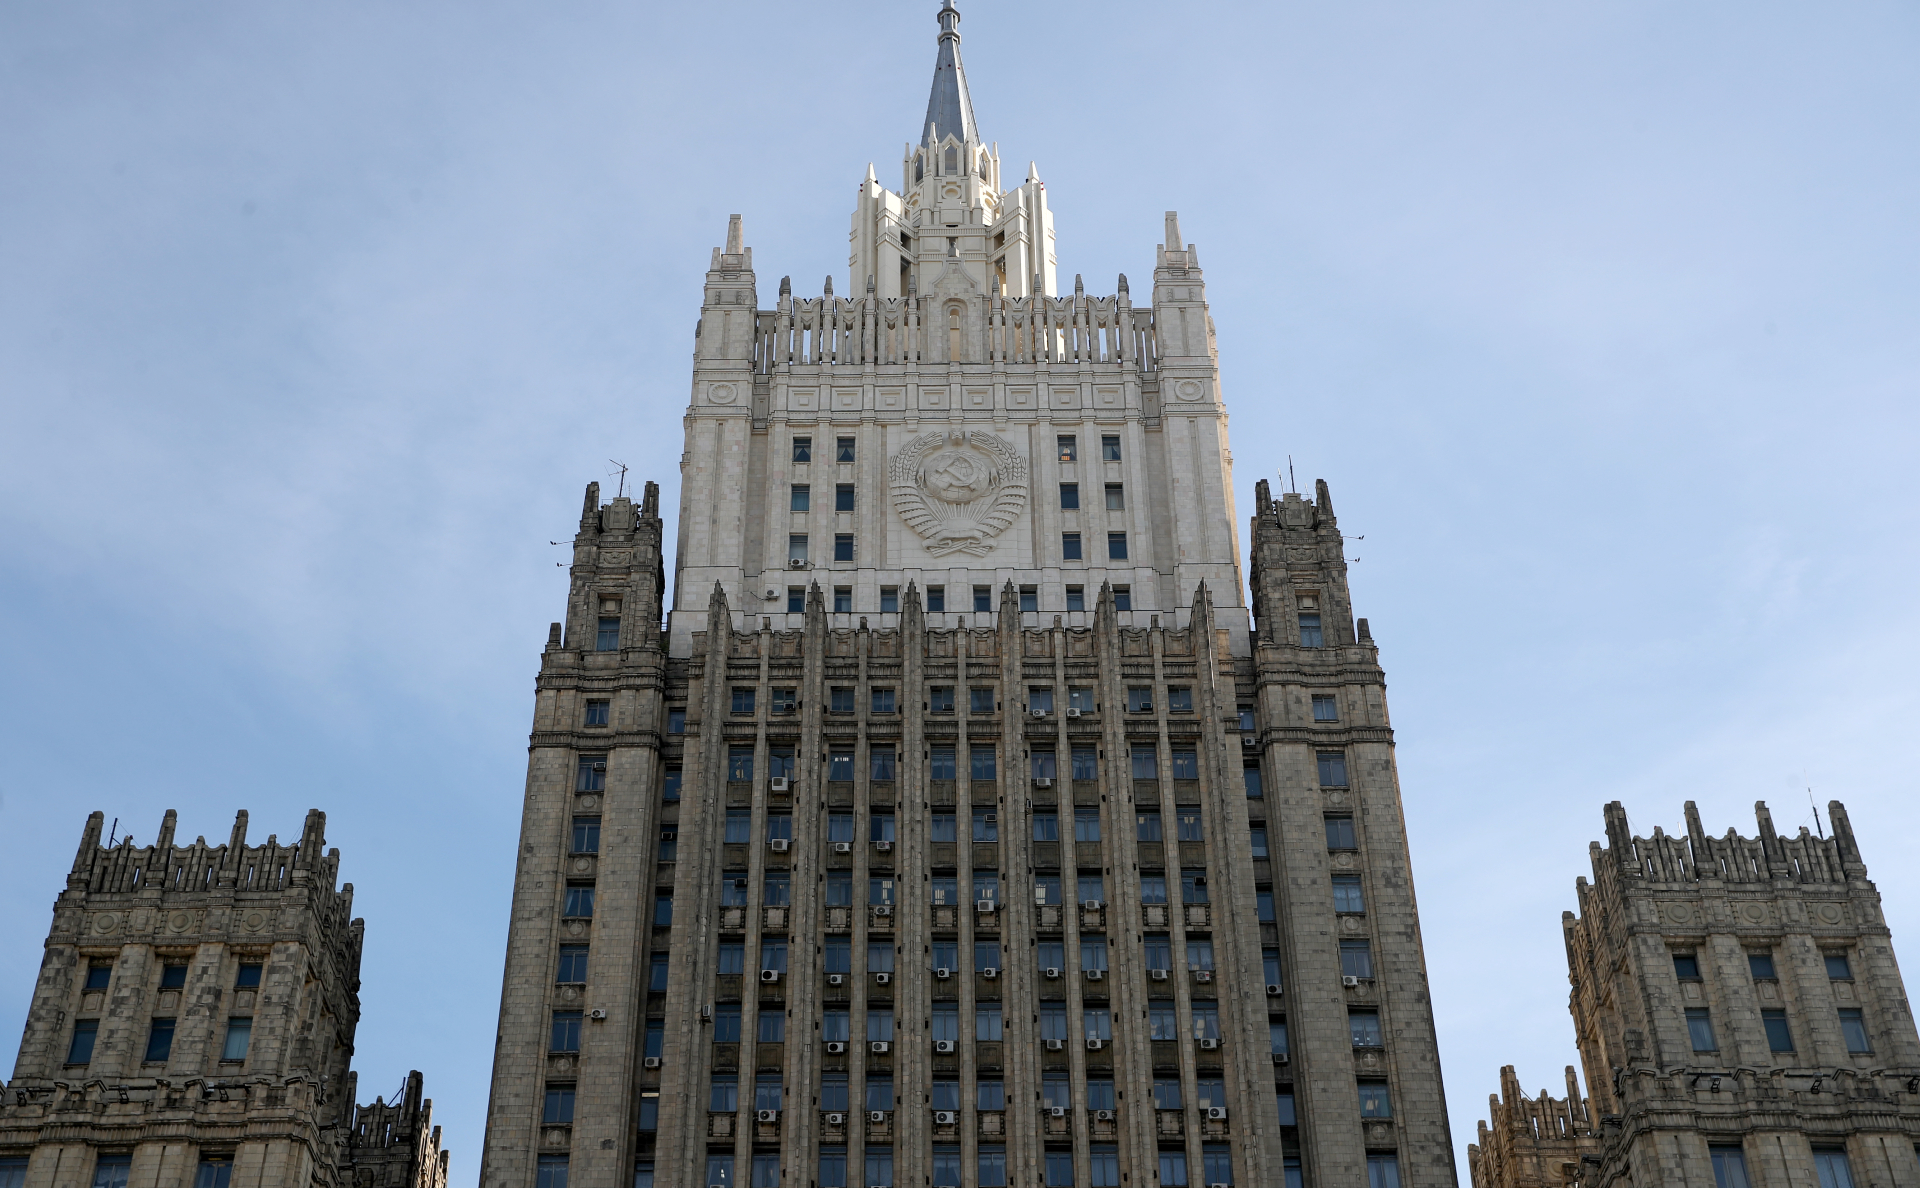 Здание МИД России в Москве